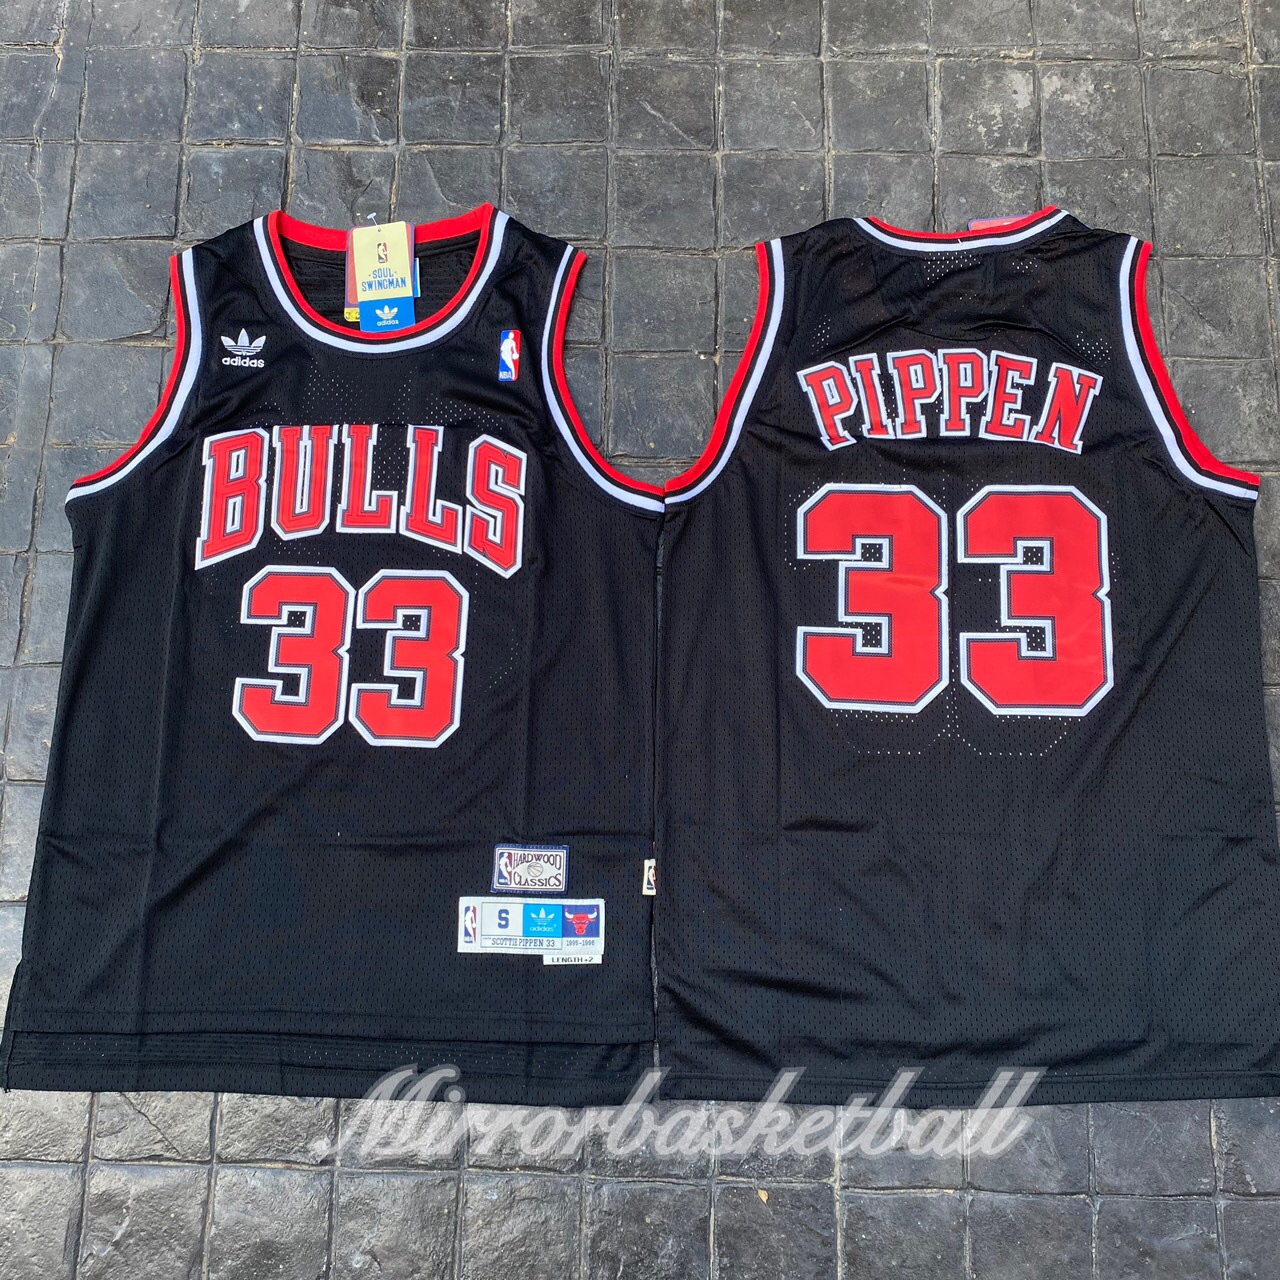 เสื้อบาสเกตบอลbasketball.jerseys(พร้อมจัดส่ง)#Bulls.Retro.33.PIPPEN.(black)